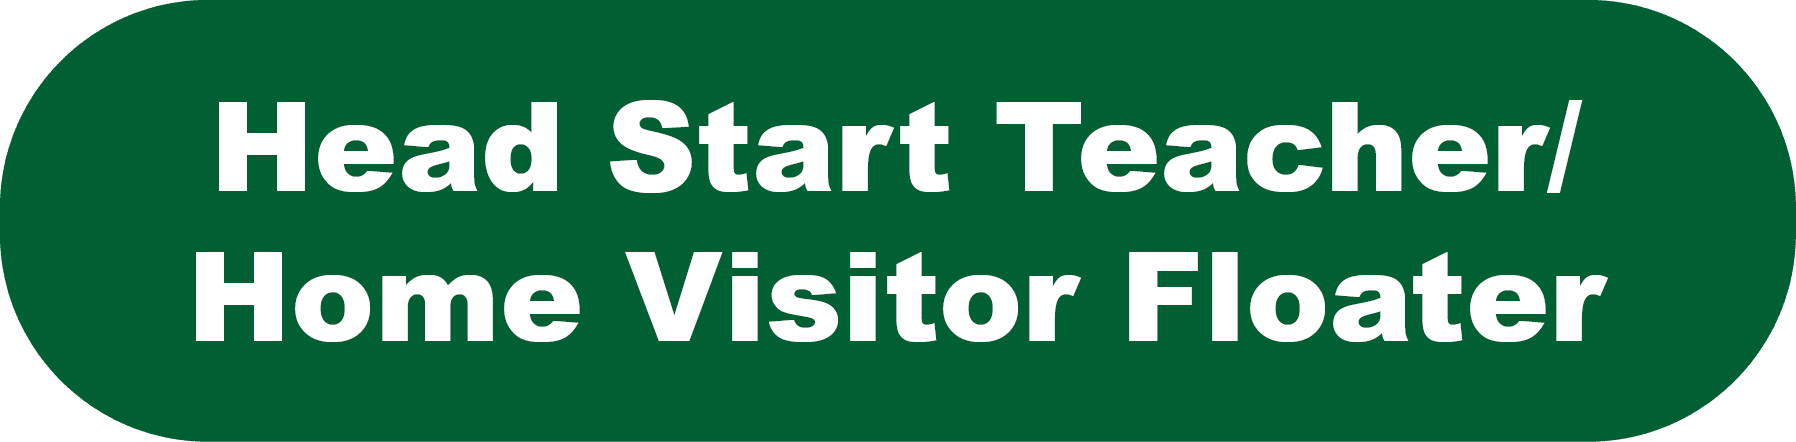 Head Start Teacher/Home Visitor Floater